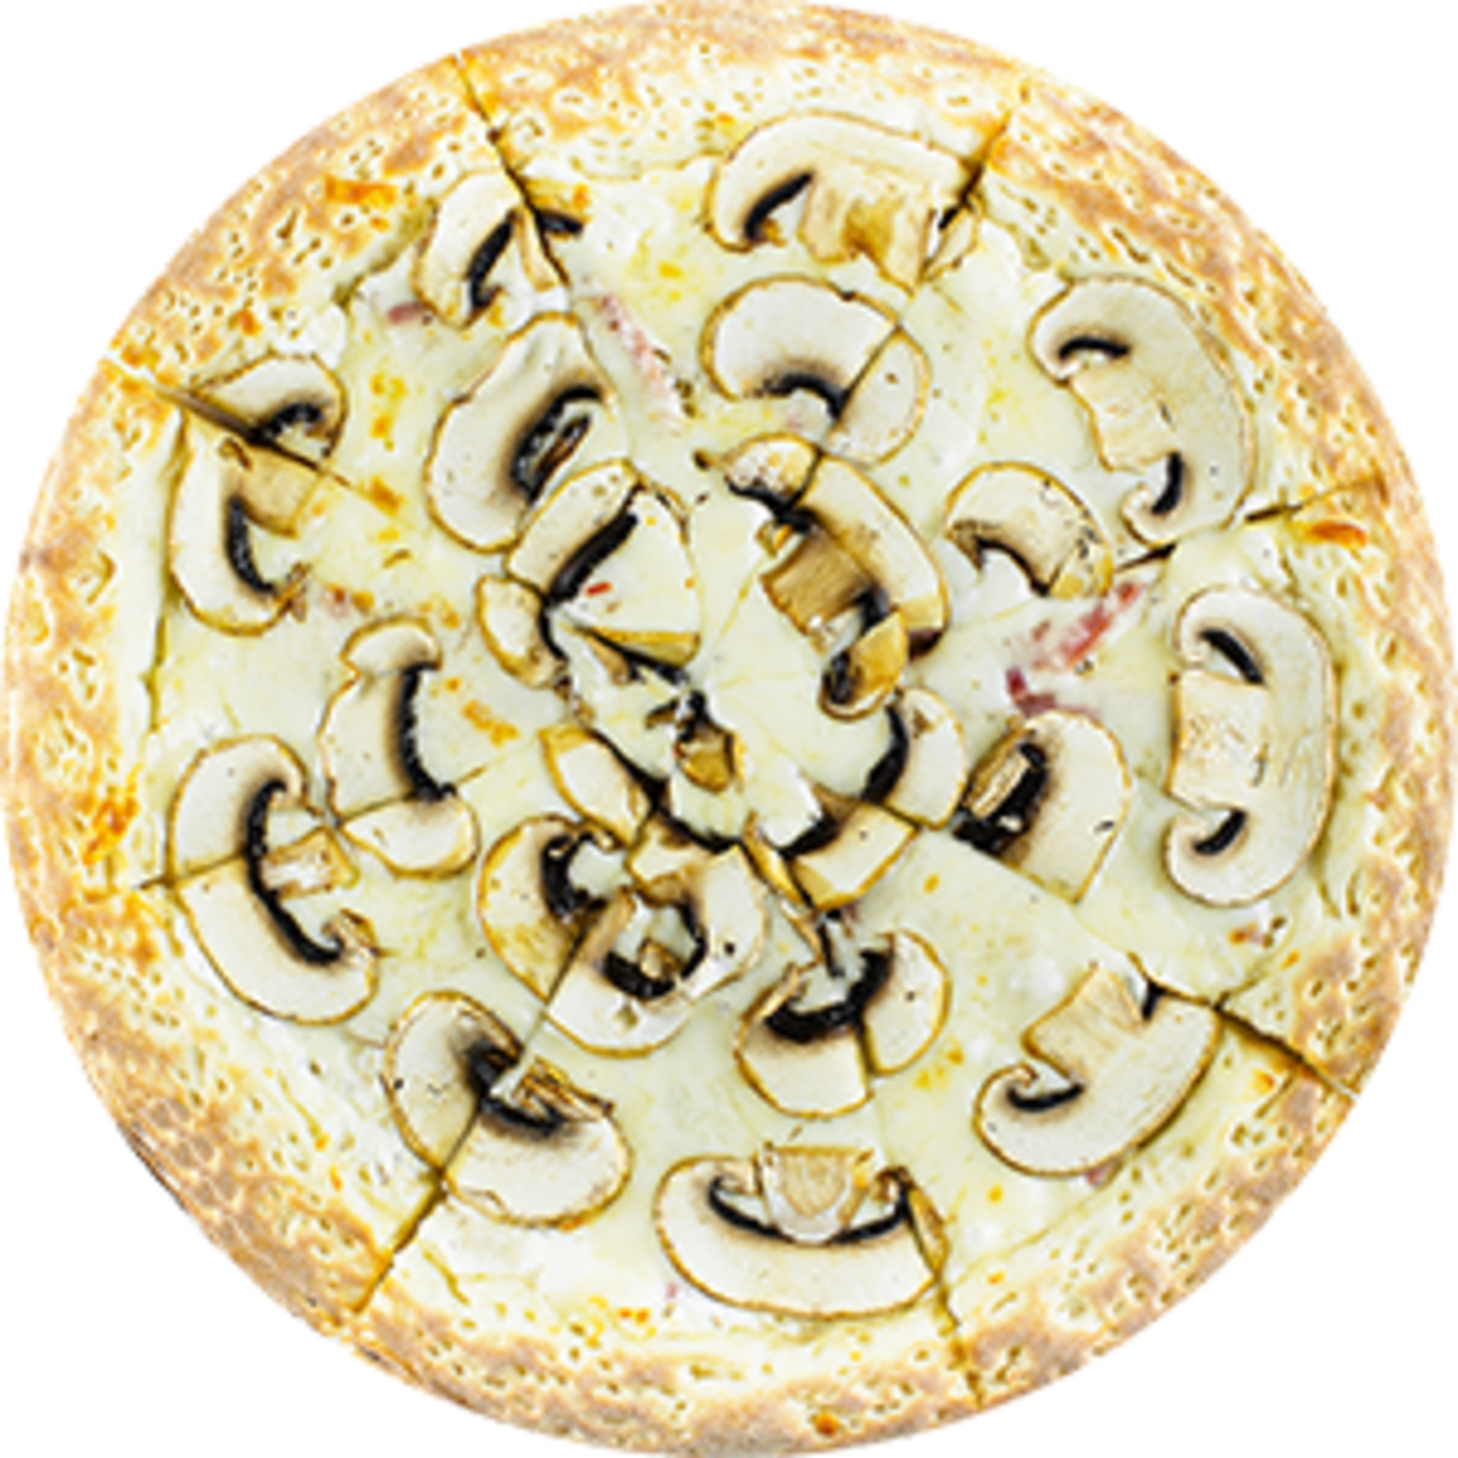 грибная пицца в сливочном соусе фото 84